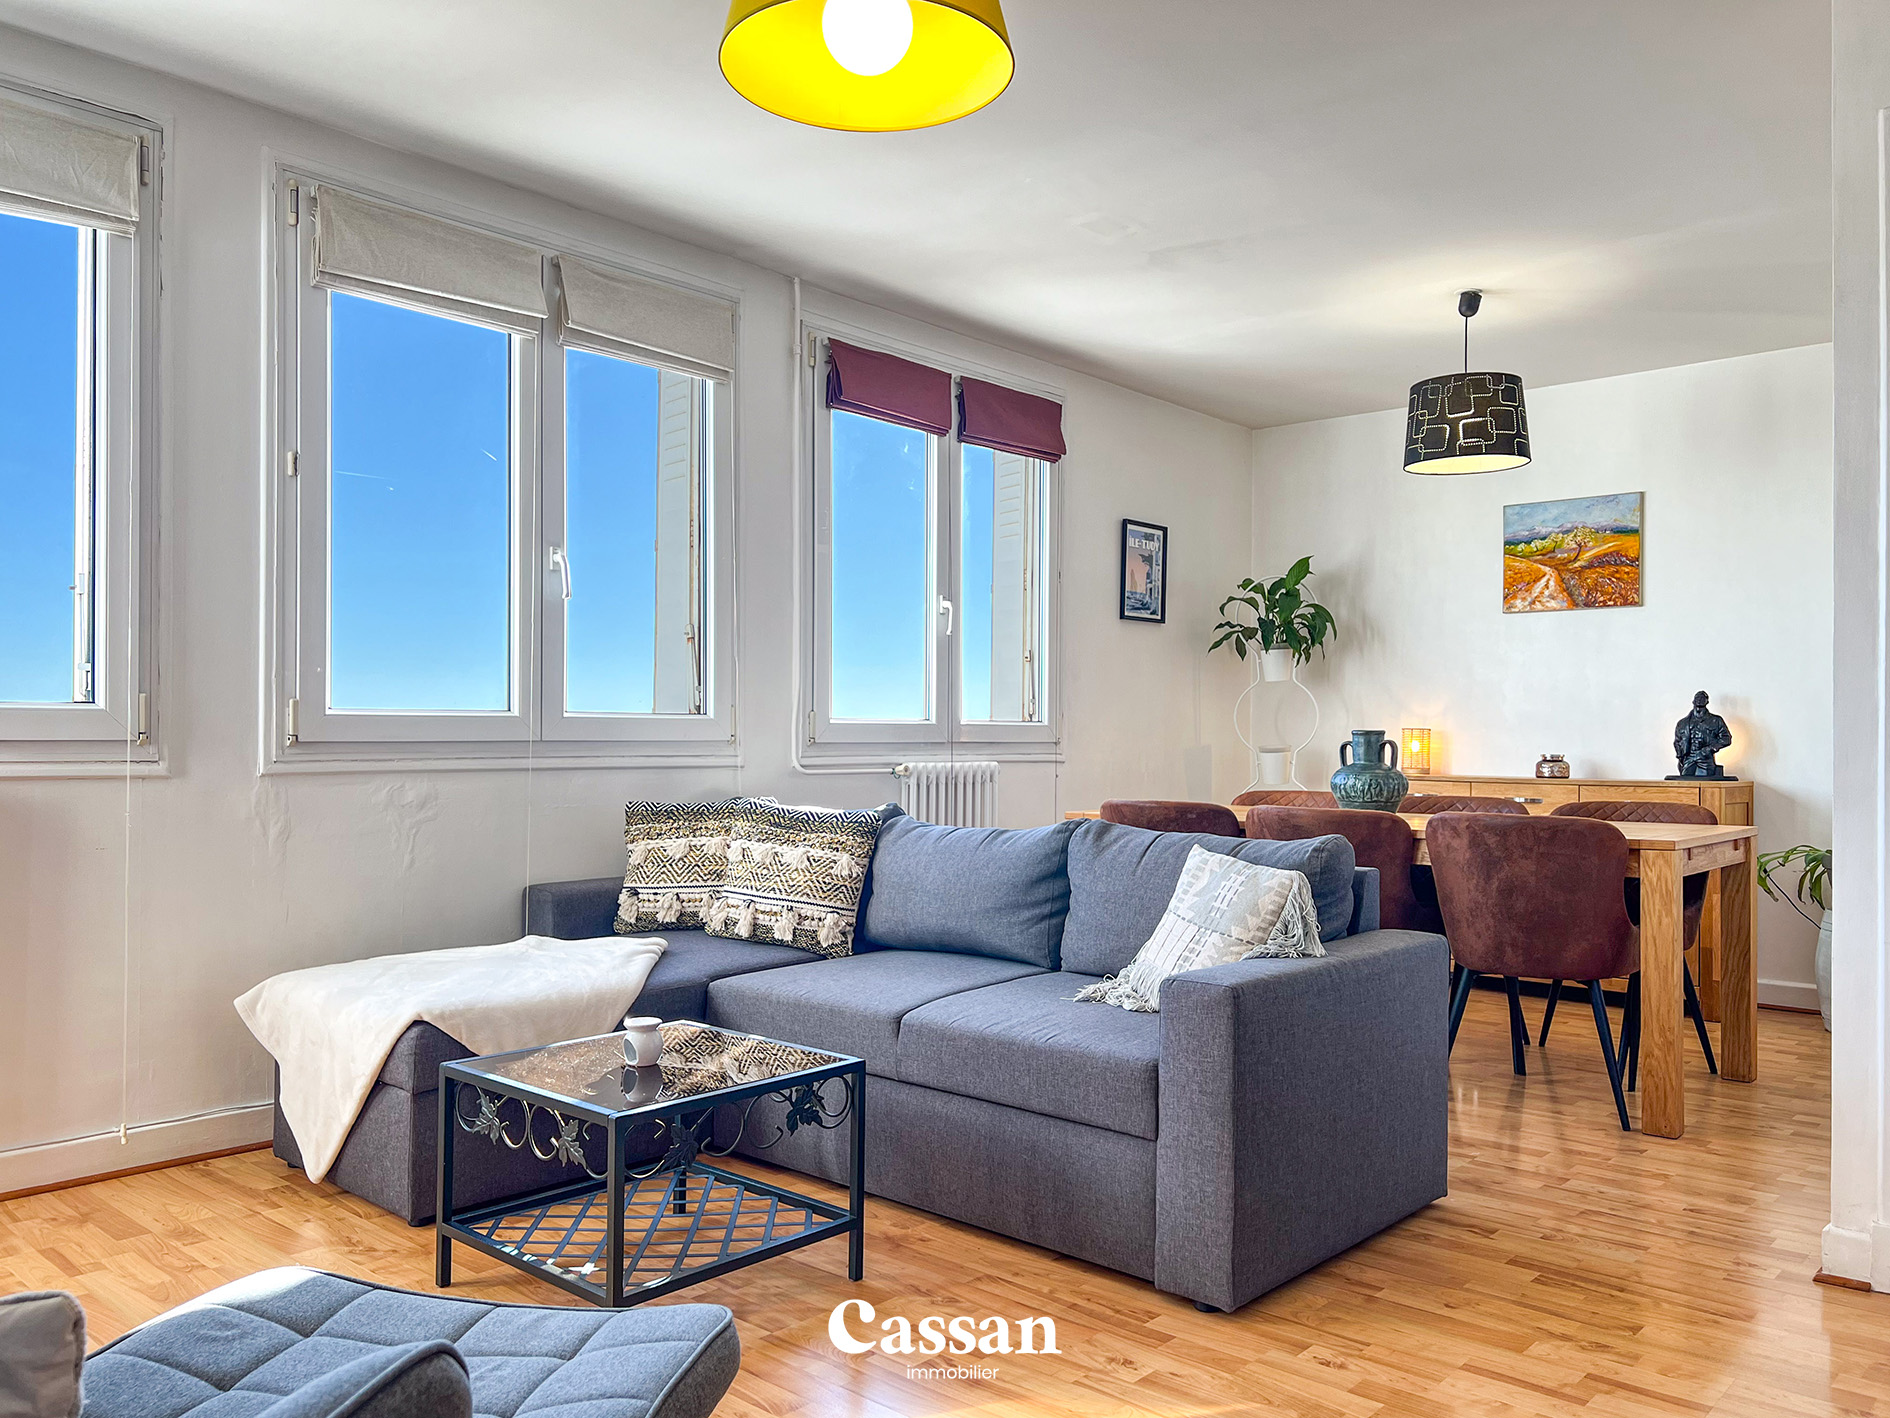 Salon appartement à vendre Aurillac Cassan immobilier agence immobilière